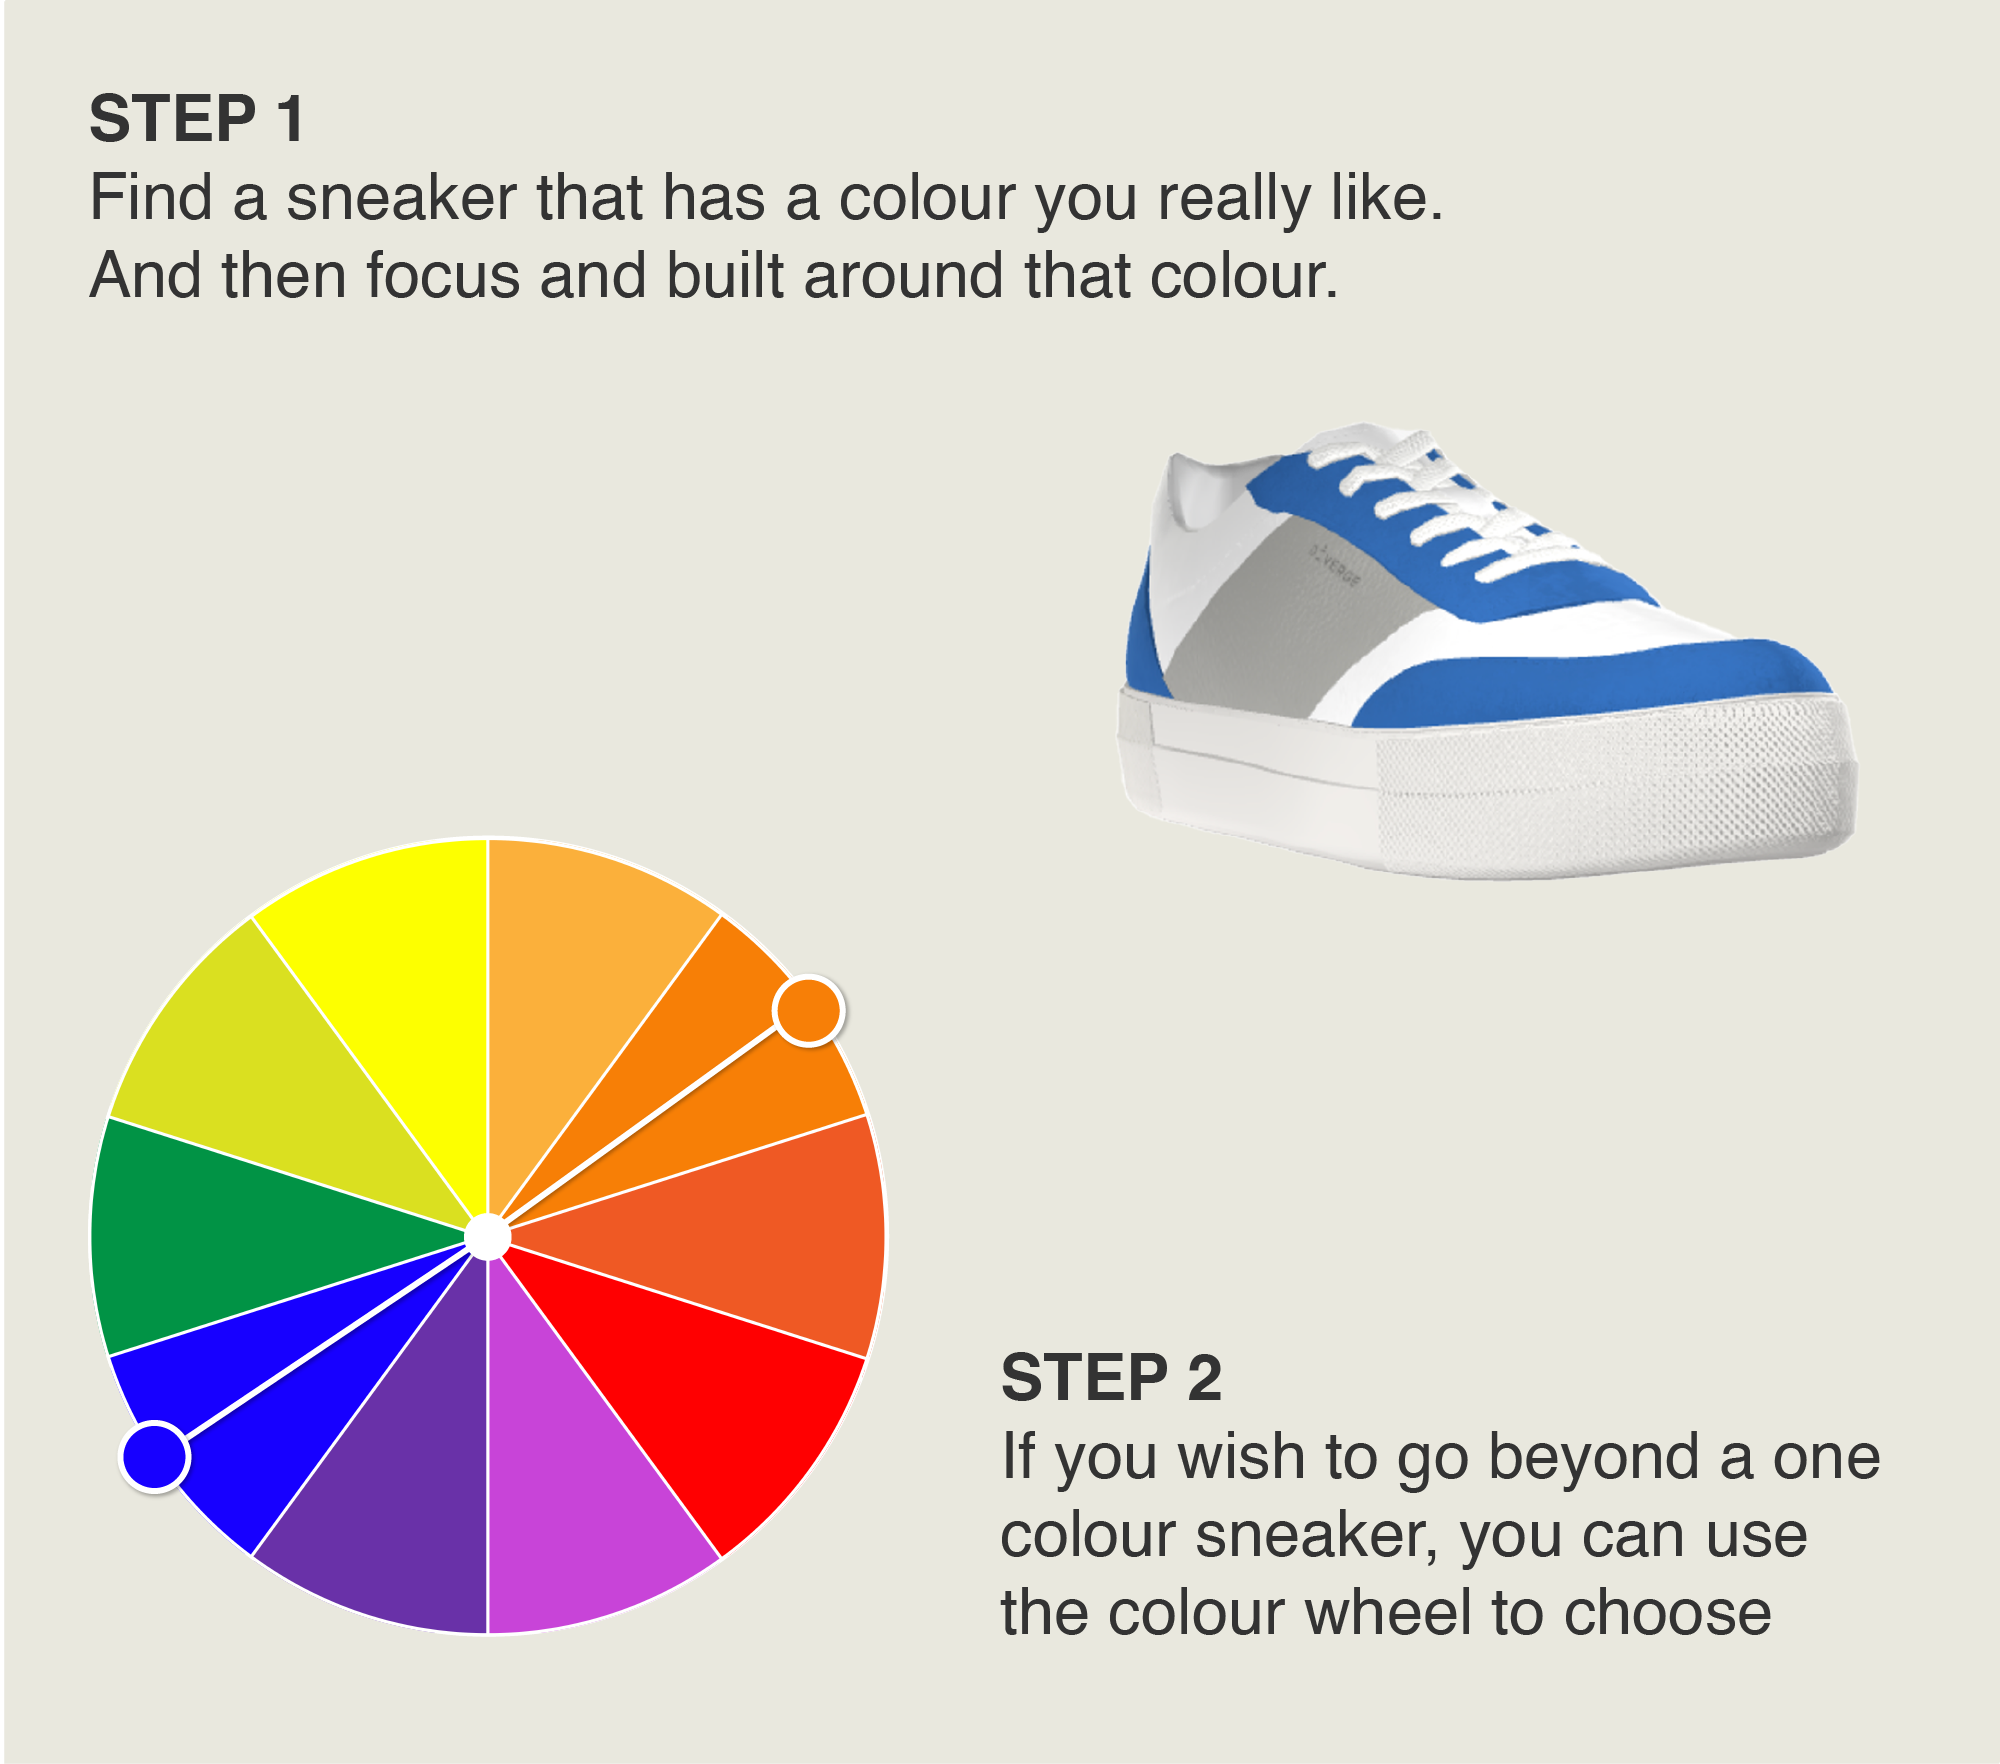 Chaussures personnalisées aux motifs uniques et aux couleurs éclatantes.